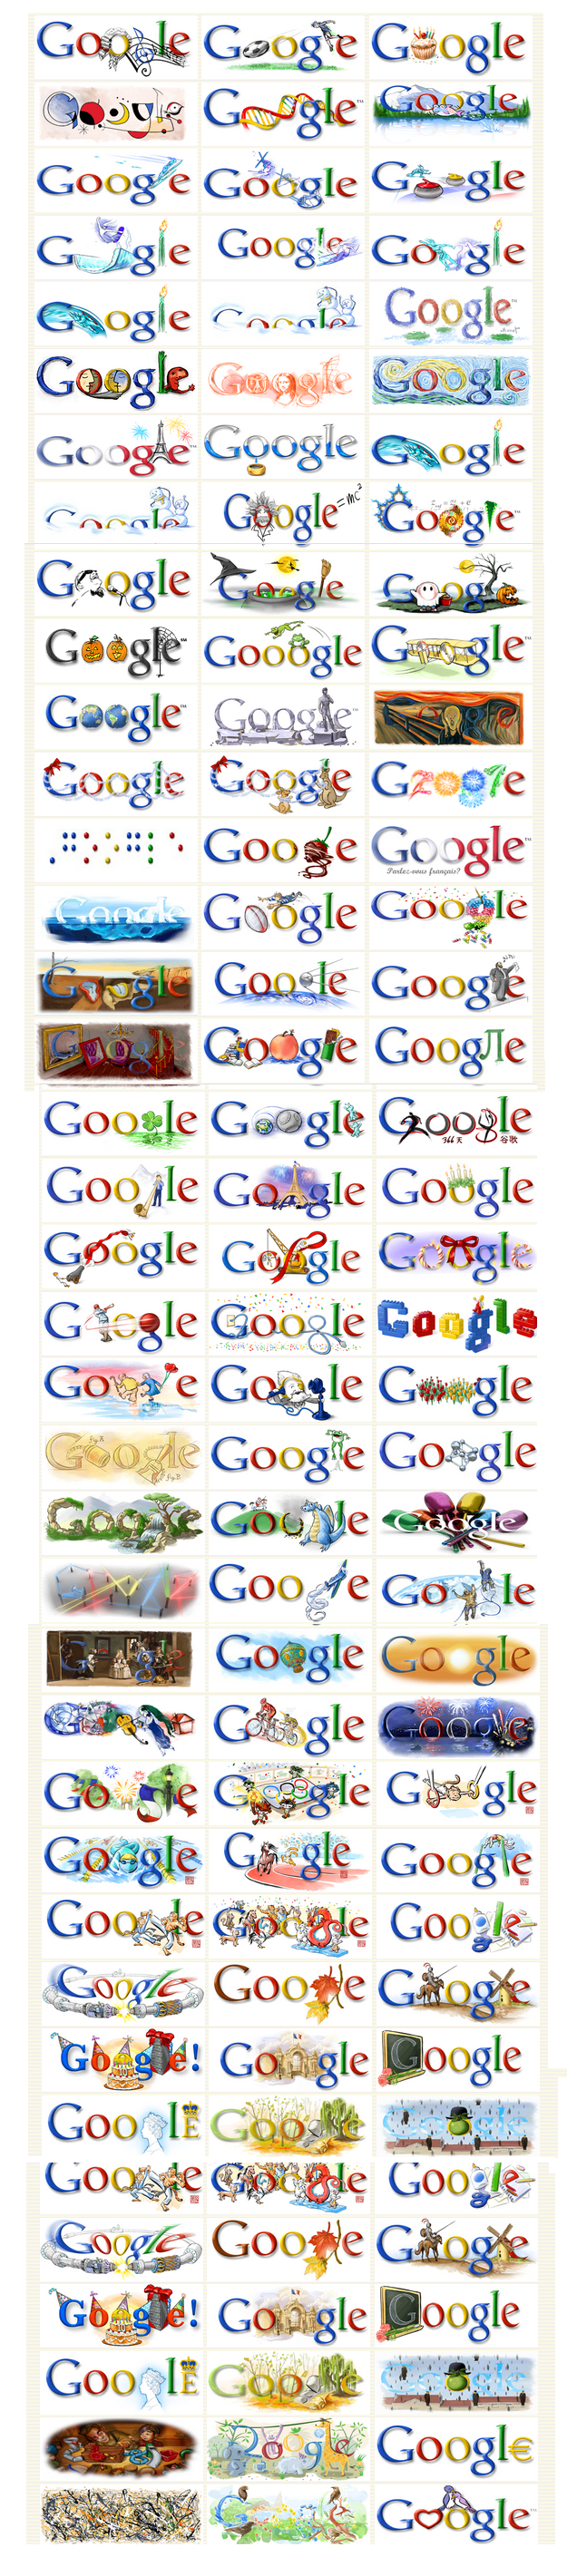 Collection de logos commémoratifs Google baptisés doodles